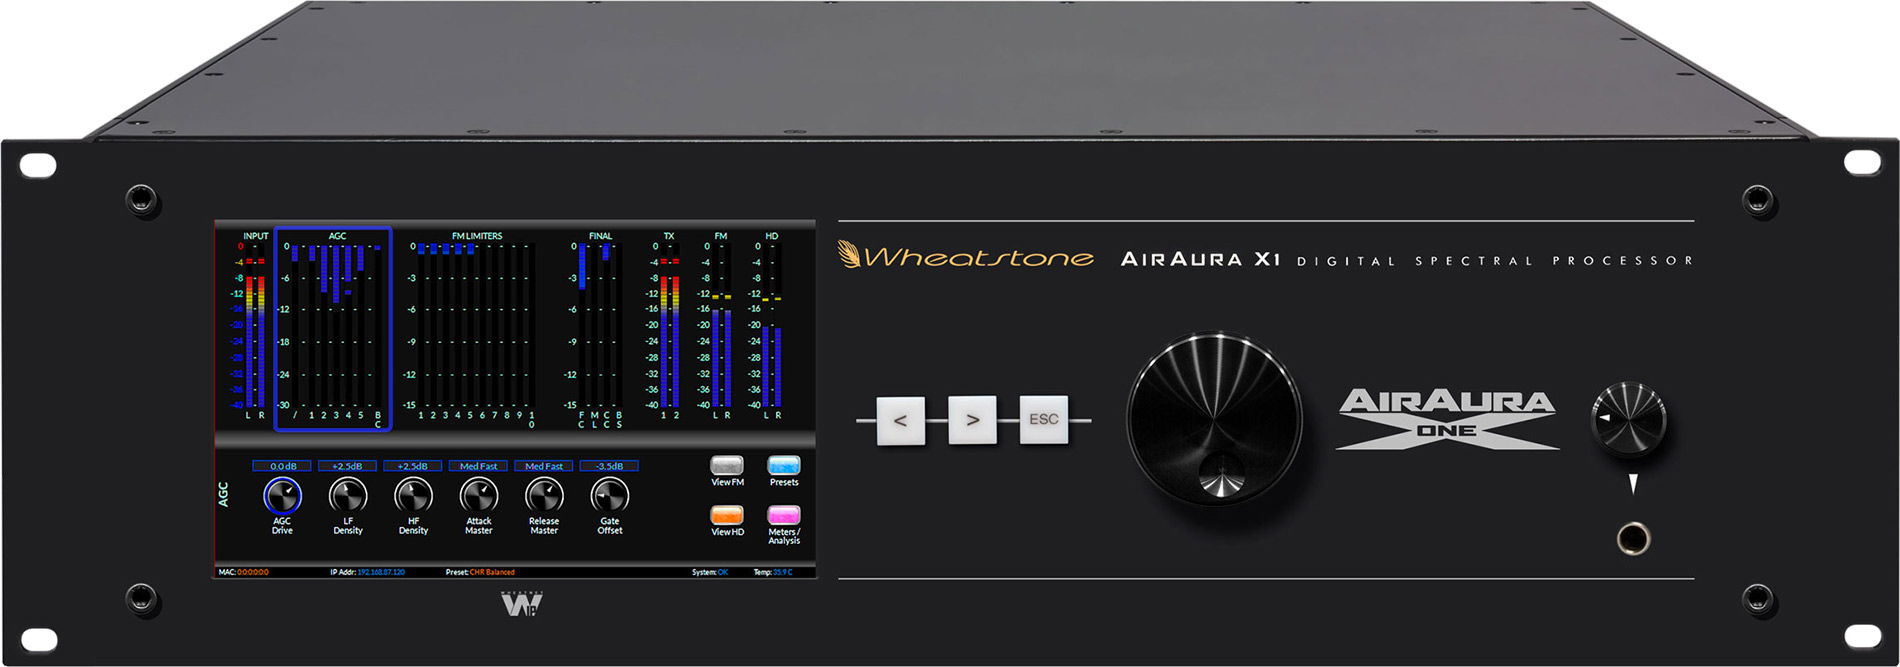 AirAura X1: front